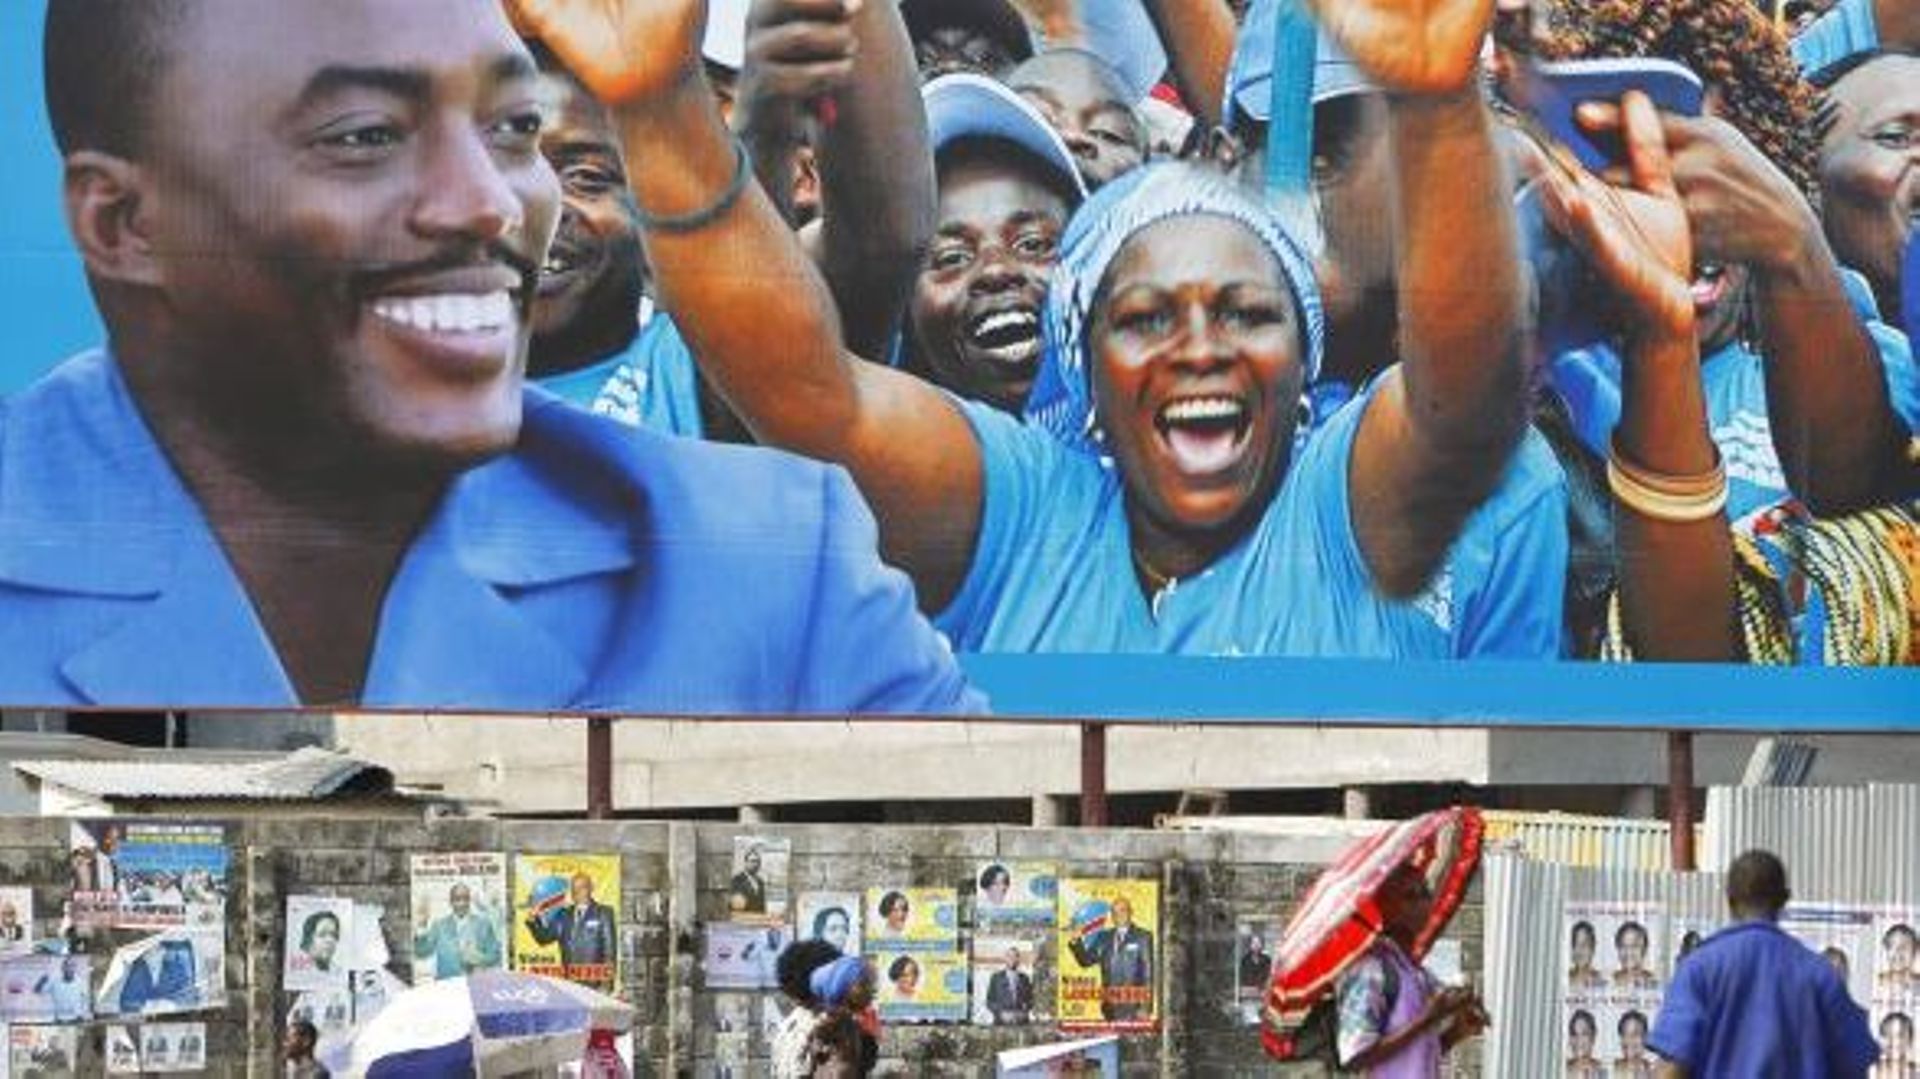 Elections RDC: Joseph Kabila vainqueur, Etienne Tshisekedi s'autoproclame